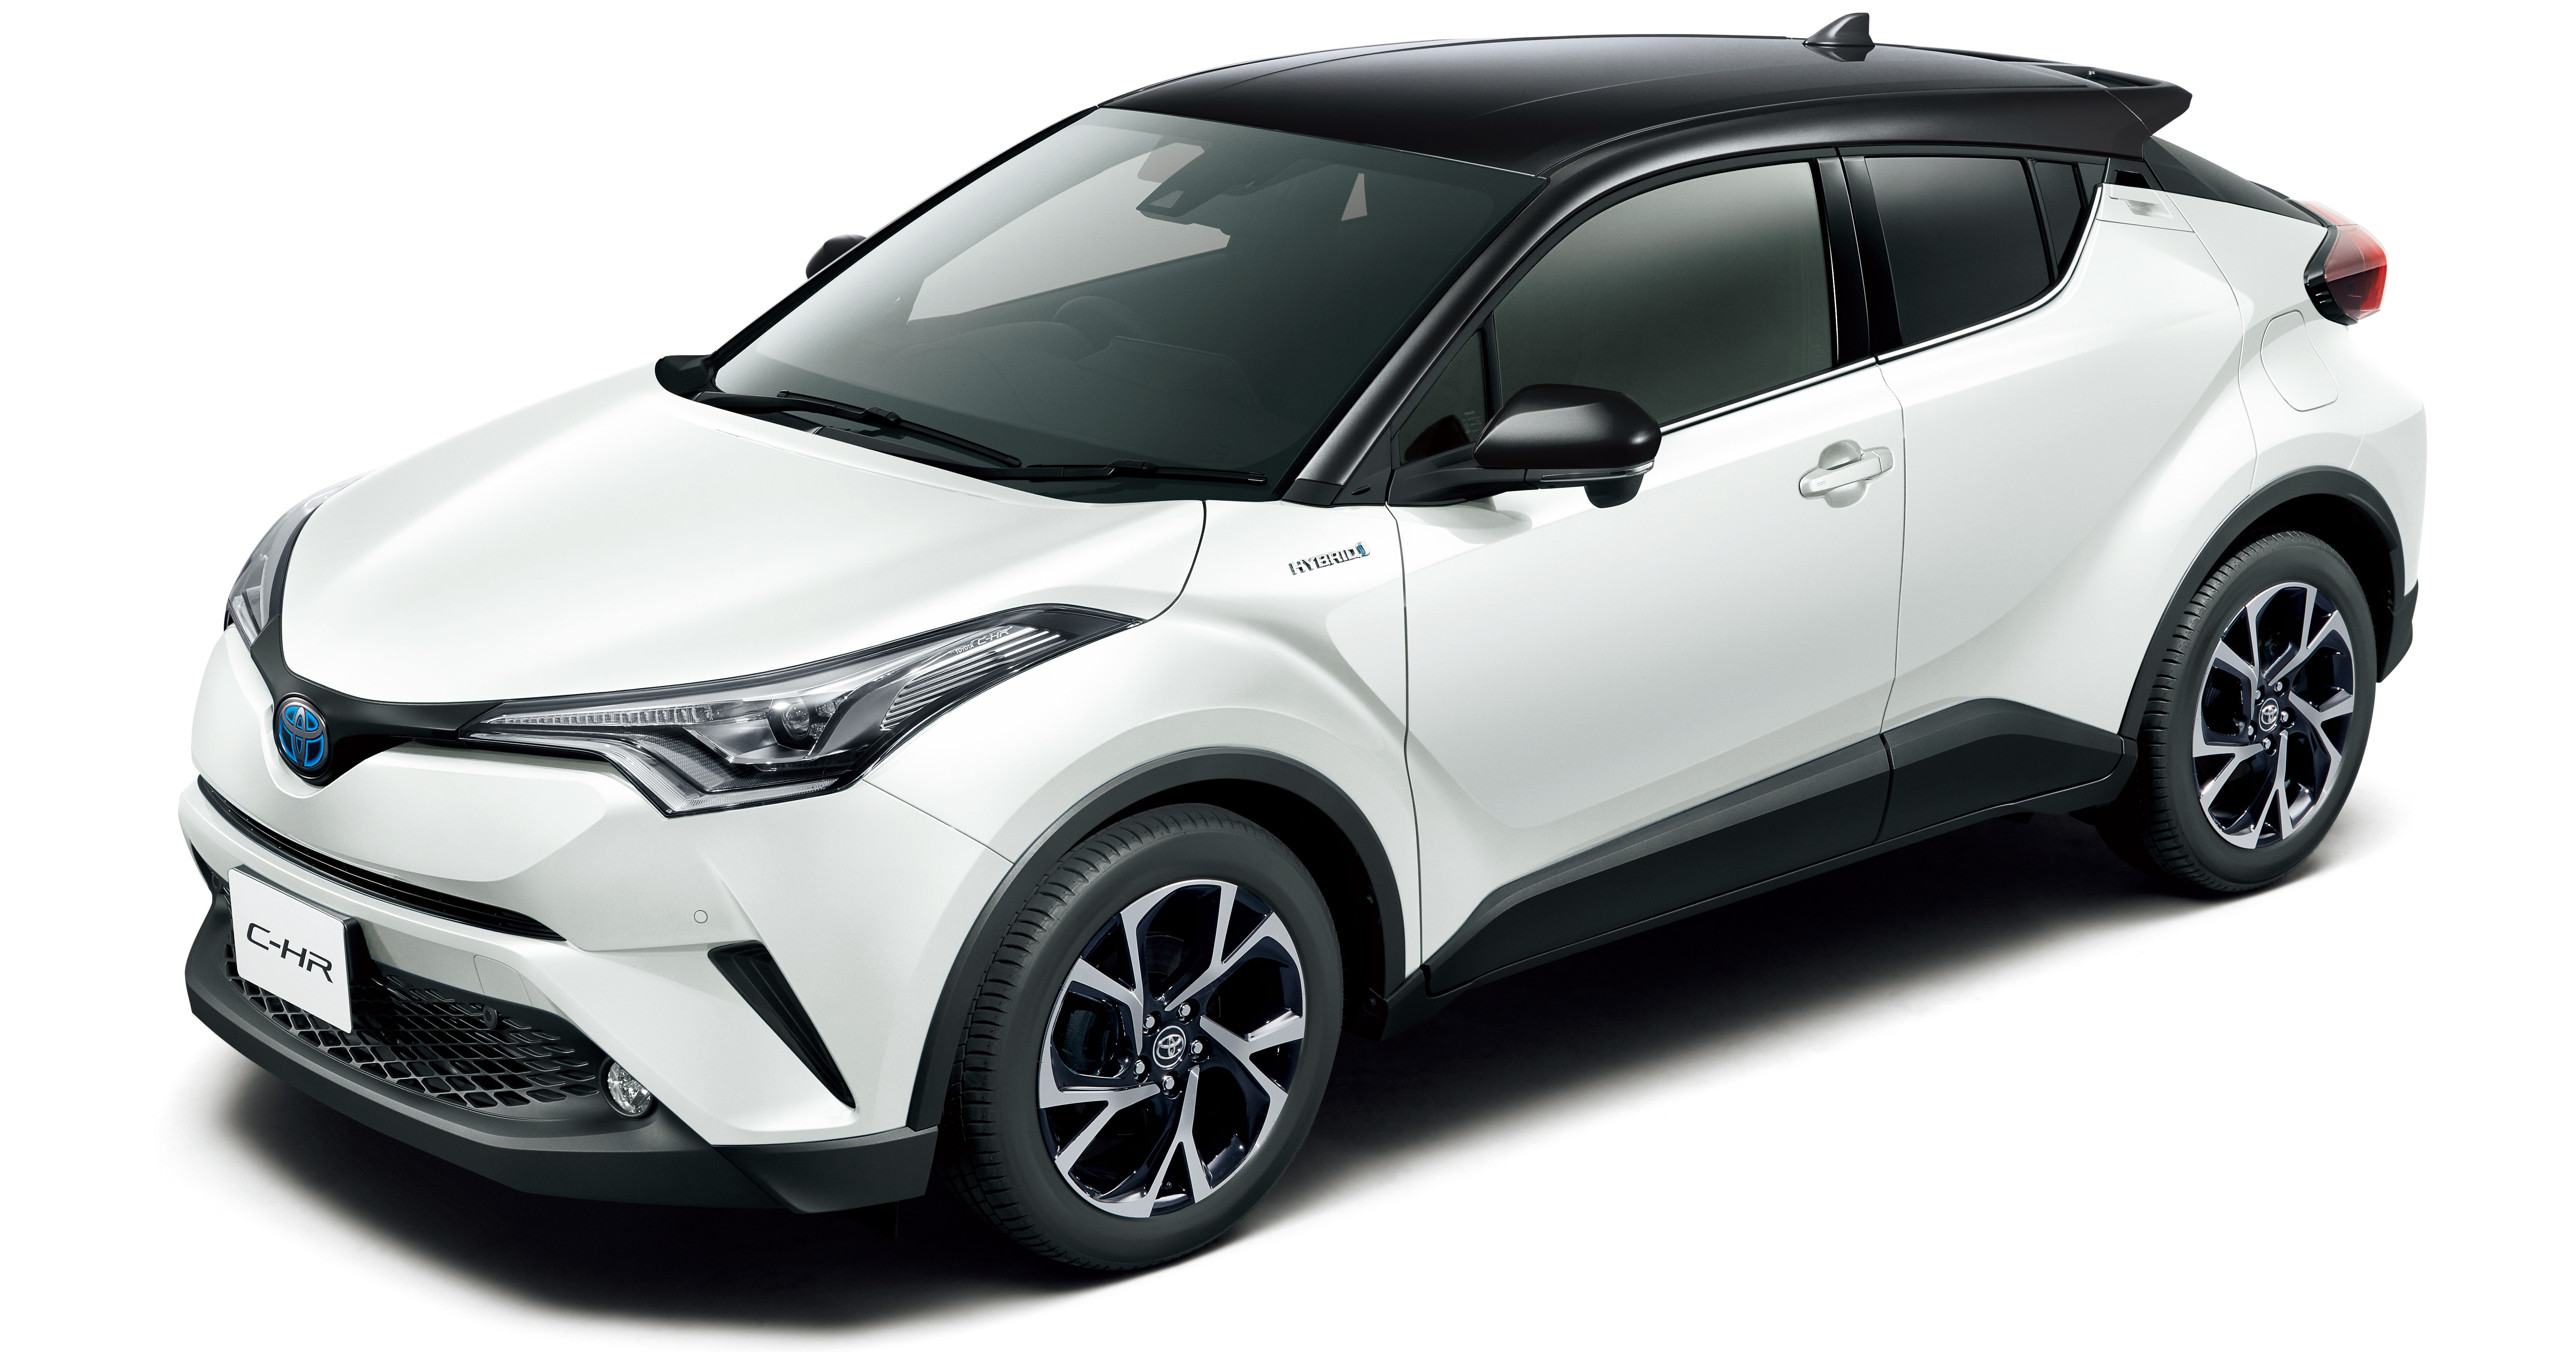 Toyota C-HR two-tone colour 1 - Paul Tan's Automotive News